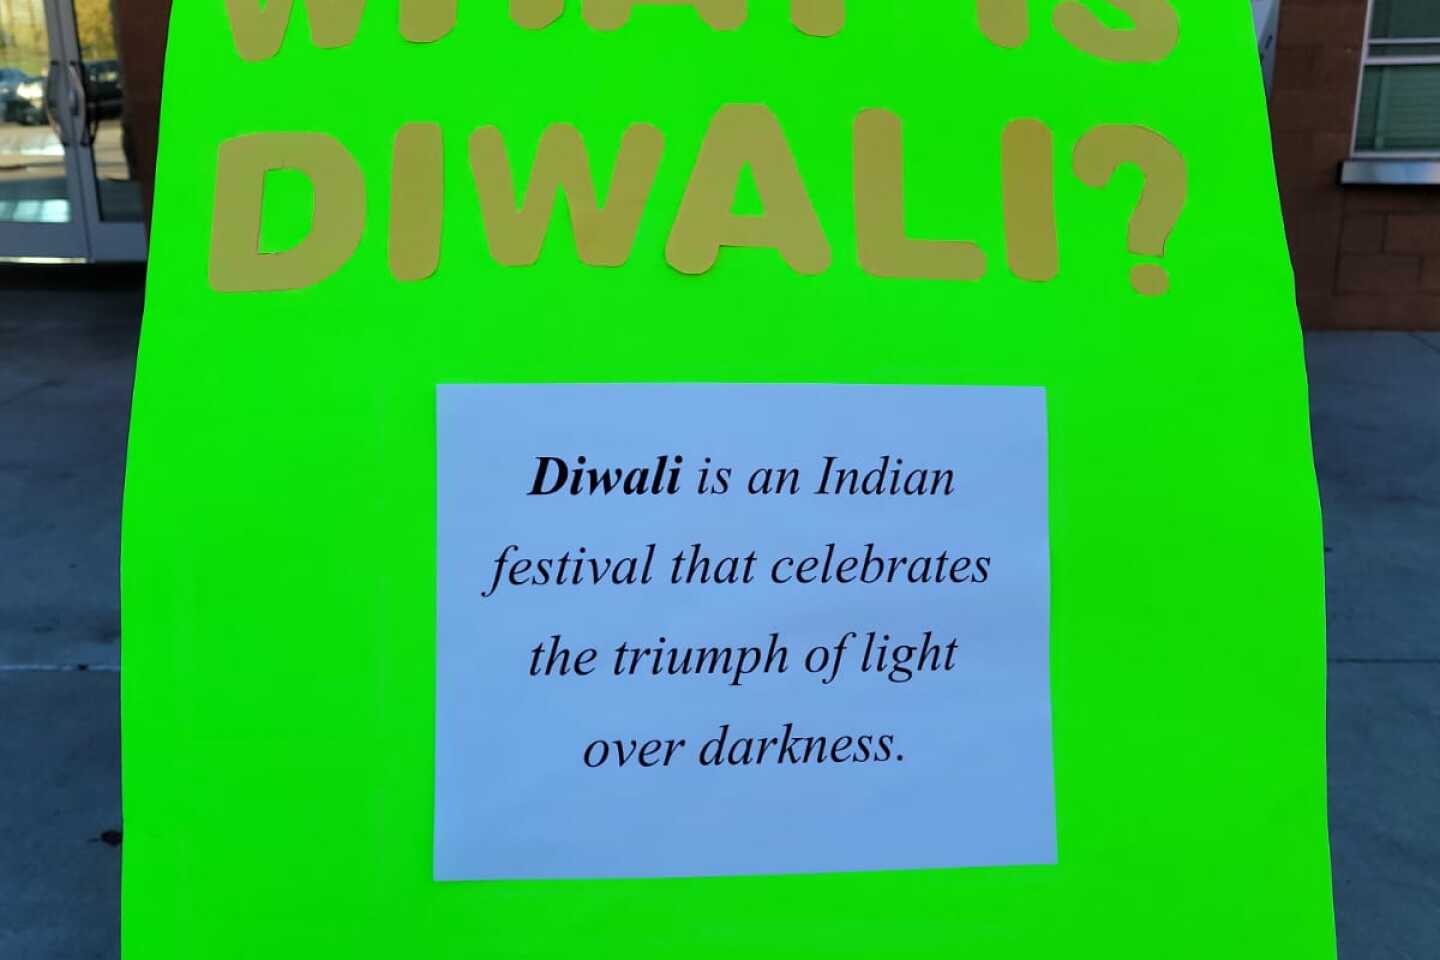 Diwali Poster explaining the meaning of the festival.jpg